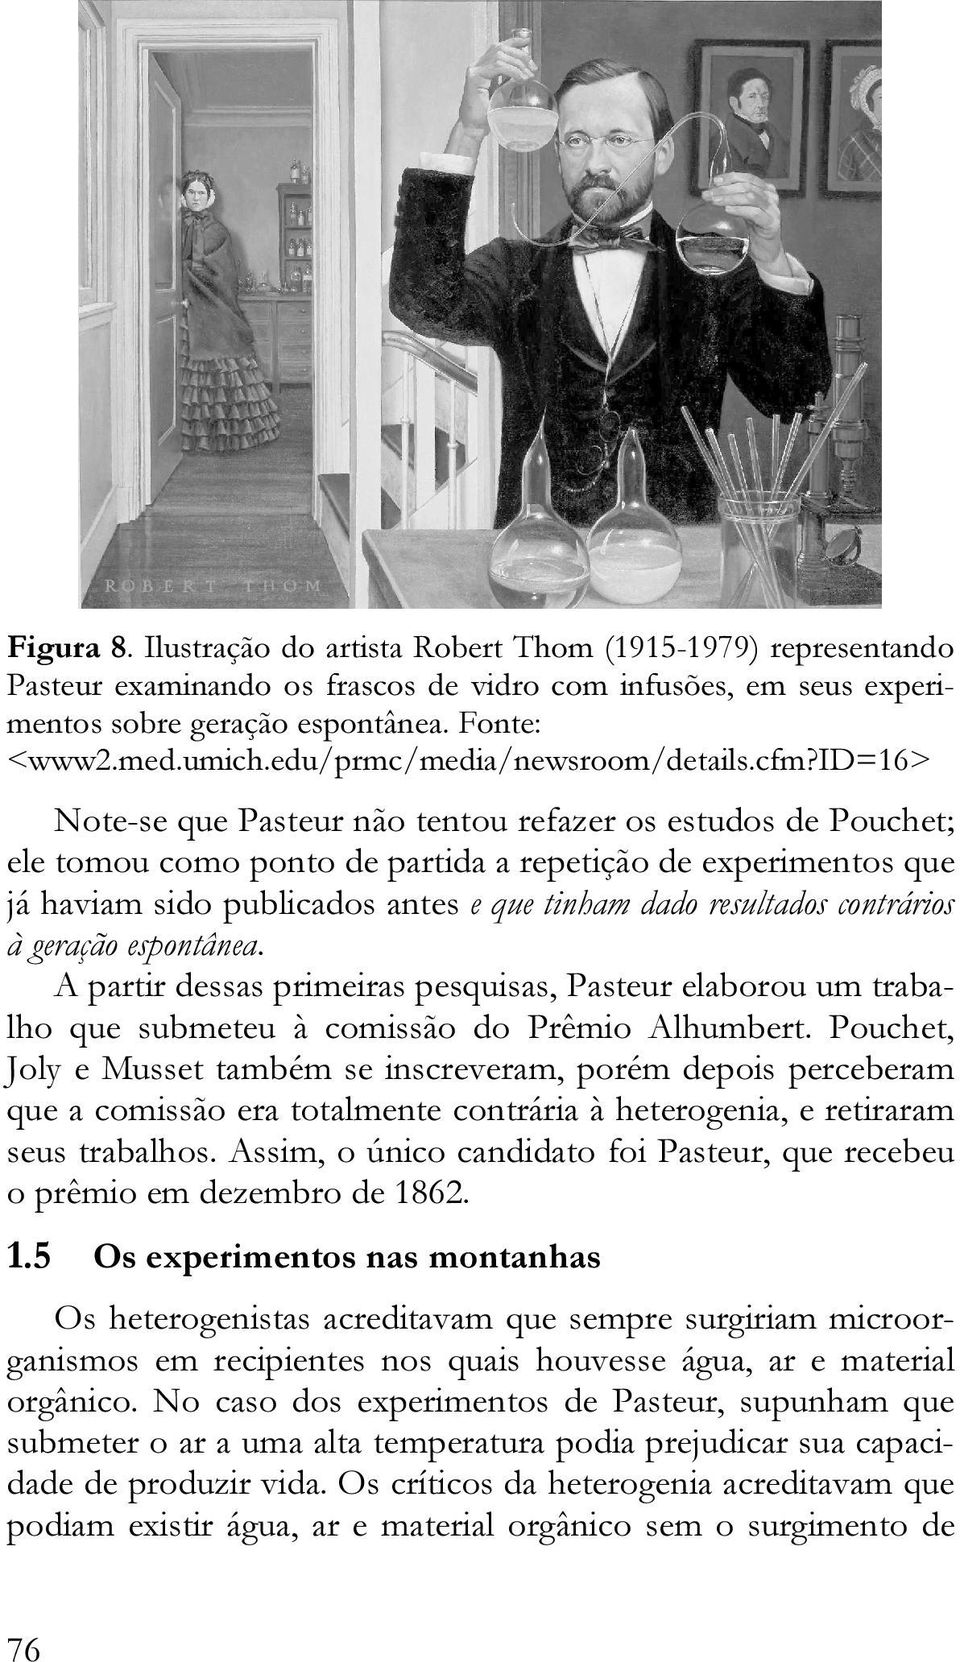 id=16> Note-se que Pasteur não tentou refazer os estudos de Pouchet; ele tomou como ponto de partida a repetição de experimentos que já haviam sido publicados antes e que tinham dado resultados